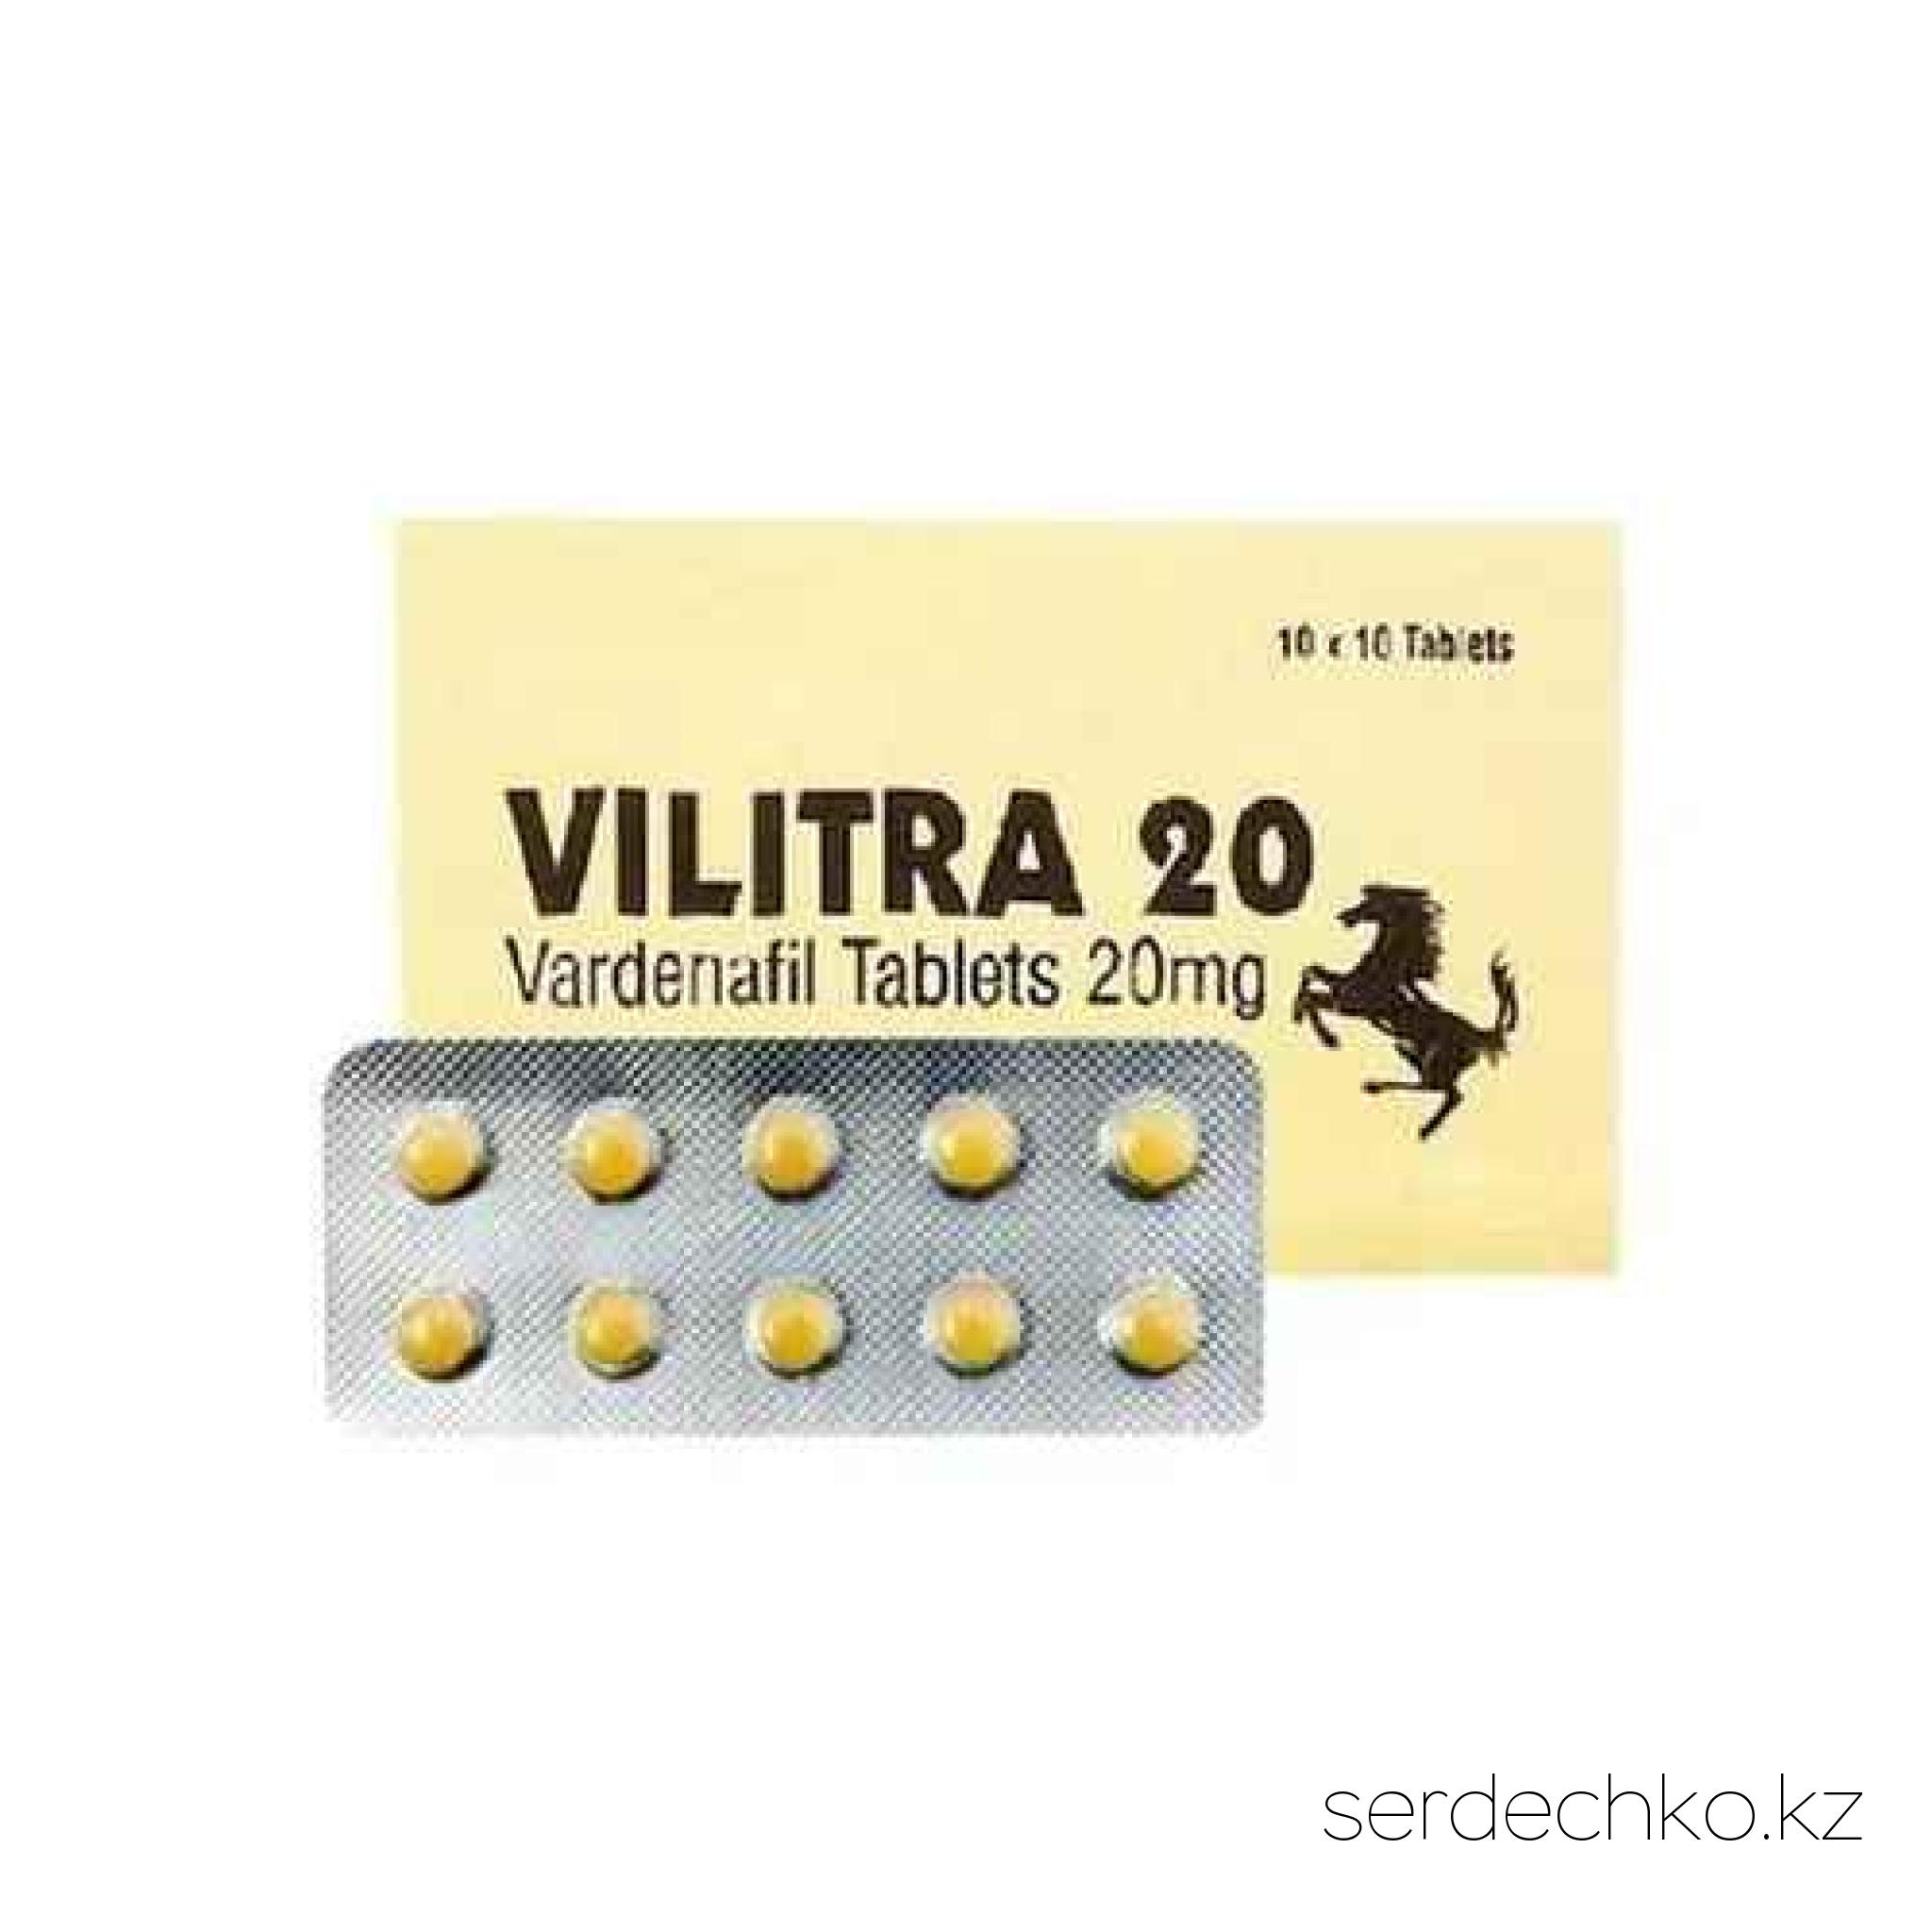 Vilitra 20 мг, 
	Левитра 20 мг – уникальный препарат, в составе которого есть действующее вещество Варденафил 20 мг в одной таблетке. Благодаря этому данный химический состав рекомендуется к использованию при борьбе с эректильной дисфункцией. По принципу действия препарат схож с Виагрой, но все же отличается от нее более эффективным и быстрым воздействием на проблему.

	
		Принцип действия


	Дженерик Vilitra 20 относится к ингибиторам и действует довольно просто: эрекция наступает за счет расслабления гладких мышц полового органа и обеспечения максимального притока крови к нему.

	Основное действующее вещество, которое находится в составе добавки, не оказывает абсолютно никакого негативного влияния на здоровье мужчин, не вызывает привыканий и побочных эффектов, а также не затрагивает качество сперматозоидом и их нормальную жизнеспособность.

	
		Показания к применению


	Вилитра имеет ряд показаний и рекомендуется к применению в следующих случаях:

	
		эректильная дисфункция (частичное проявление или же полное отсутствие эрекции);
	
		преждевременная эякуляция;
	
		нестабильная, неуверенная, слабая мужская сила;
	
		нарушение потенции по причине сильных стрессов, усталости (в т.ч. хронической).


	
		Преимущества


	Помимо быстрого, эффективного и безопасного воздействия на мужскую проблему, данный дженерик имеет еще несколько преимуществ:

	высокая совместимость с любой пищей (жирная, мучная, острая пища, а также алкоголь)

	
		быстрота действия (эффект виден уже через 20-30 минут);
	
		длительность действия – 8 часов;
	
		эффективнее и доступнее Виагры;
	
		нет определенного курса лечения (можно принимать по необходимости).


	
		Способ применения и дозировка


	Перед приемом важно понимать, что максимальный эффект после приема препарата наступает только при наличии достаточного уровня сексуальной стимуляции.

	Принимать препарат необходимо не чаще 1 раза в сутки 1таблетку за 40-60 минут до полового контакта, независимо от приёма пищи. Эффективность и переносимость состава зависит от индивидуальных особенностей организма, а также если очень слабая эрекция, если есть избыточный вес от 100 кг. Отталкиваясь от этого, суточная доза может быть увеличена до 40 мг (2 таблетки) 
